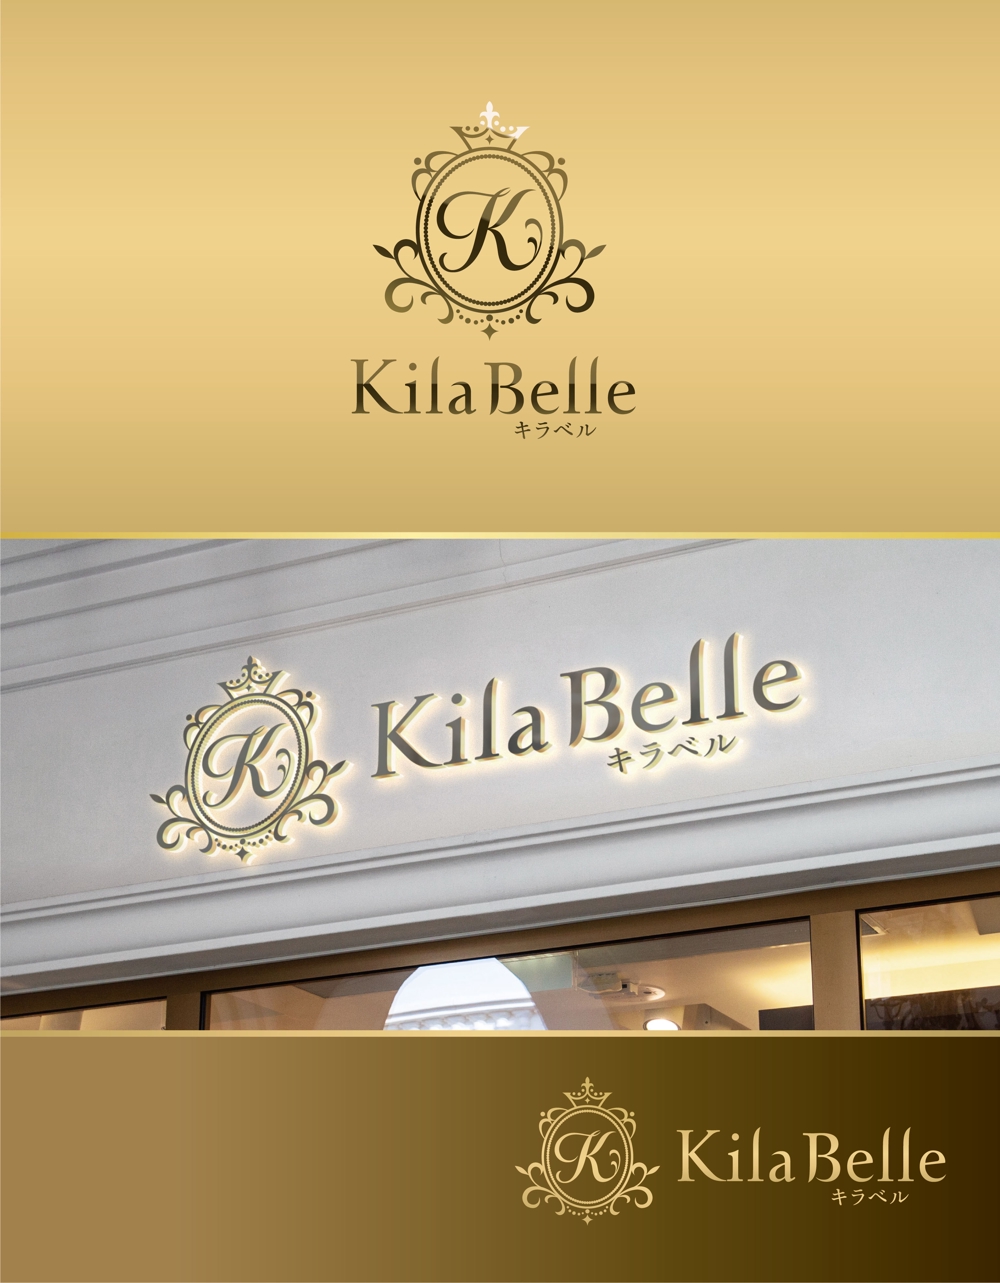 洗練された大人の女性へのネットショップ＜KilaBelle>のロゴをデザインして下さい